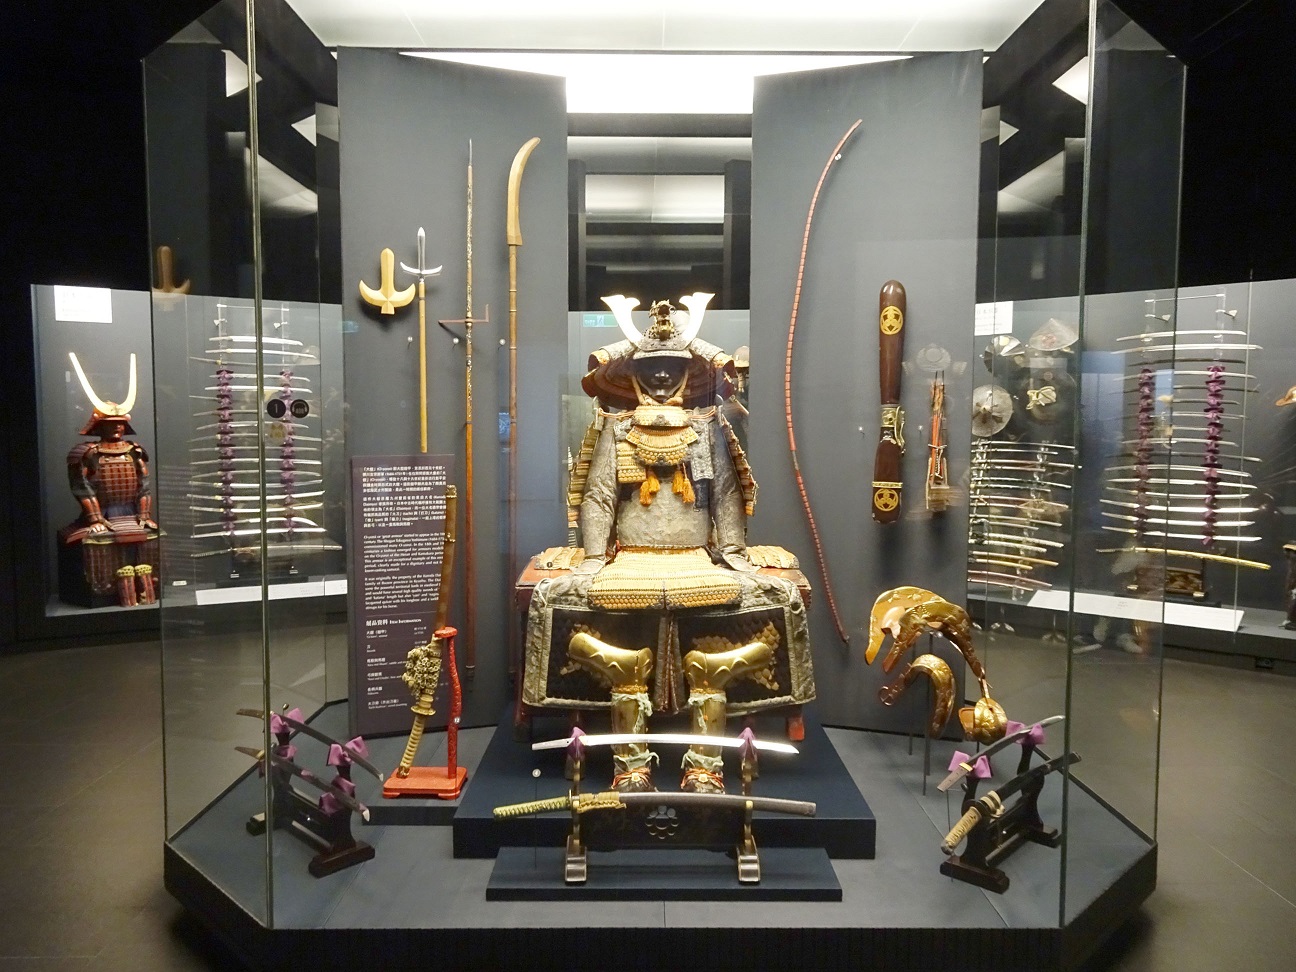 Bước vào Cung điện Thần thoại Hy Lạp - Bộ sưu tập tuyệt đẹp của Bảo tàng Kỳ Mỹ tại Đài Loan